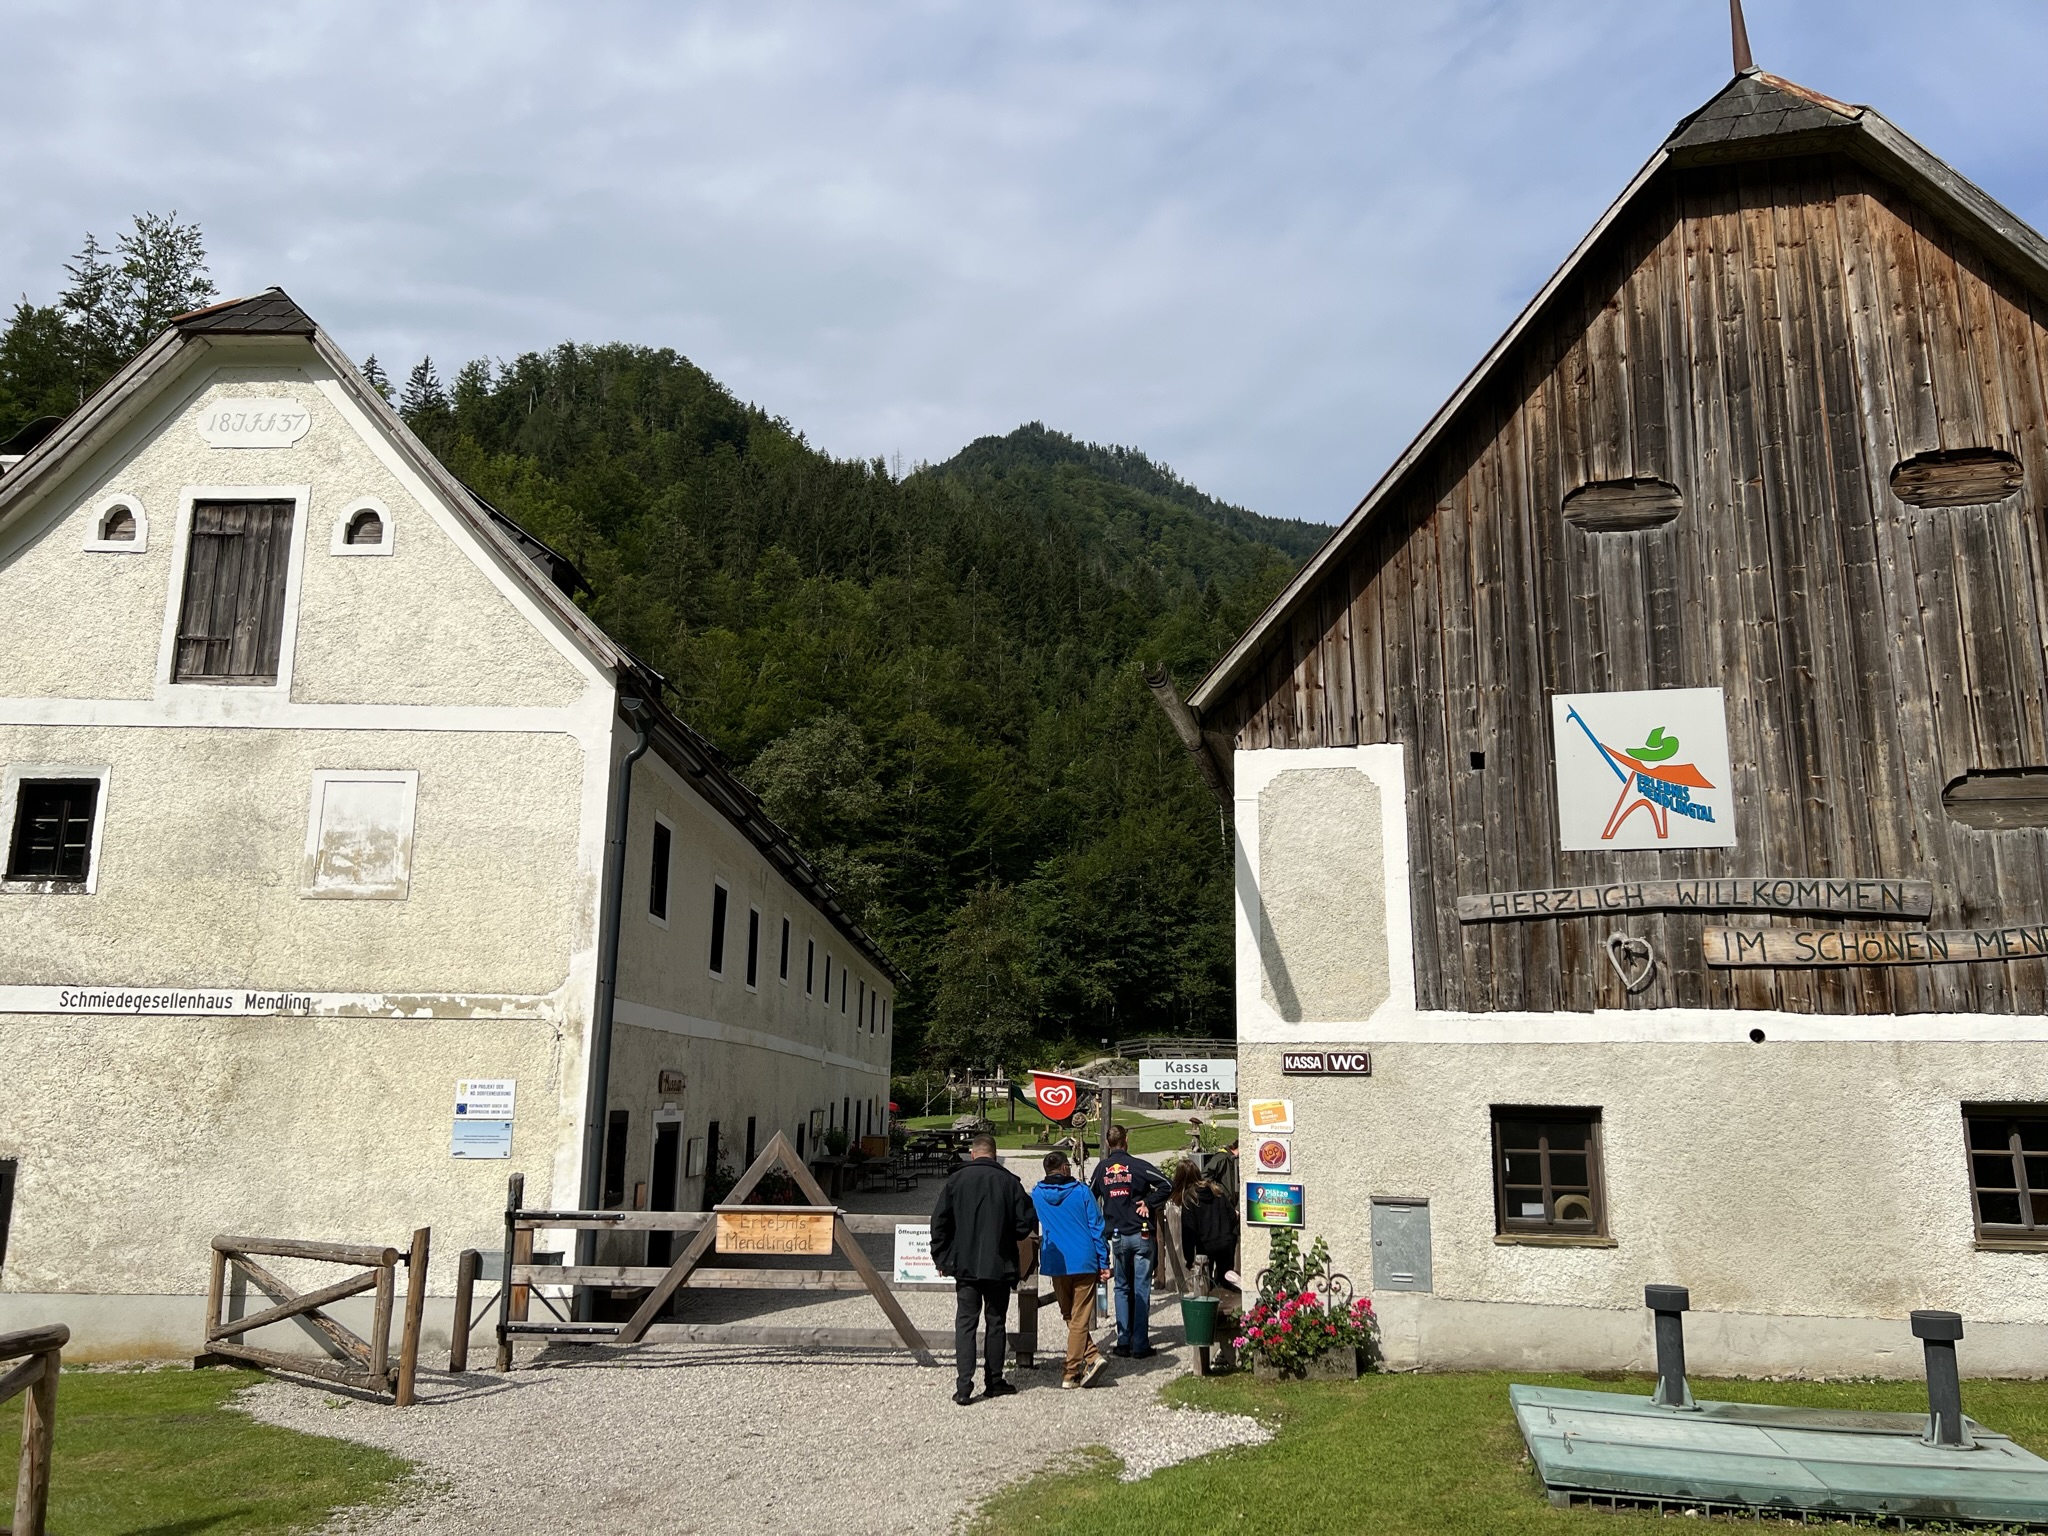 Niederösterreich, Wanderung durch die Erlebniswelt Mendlingtal, 365Austria by Paul Weindl